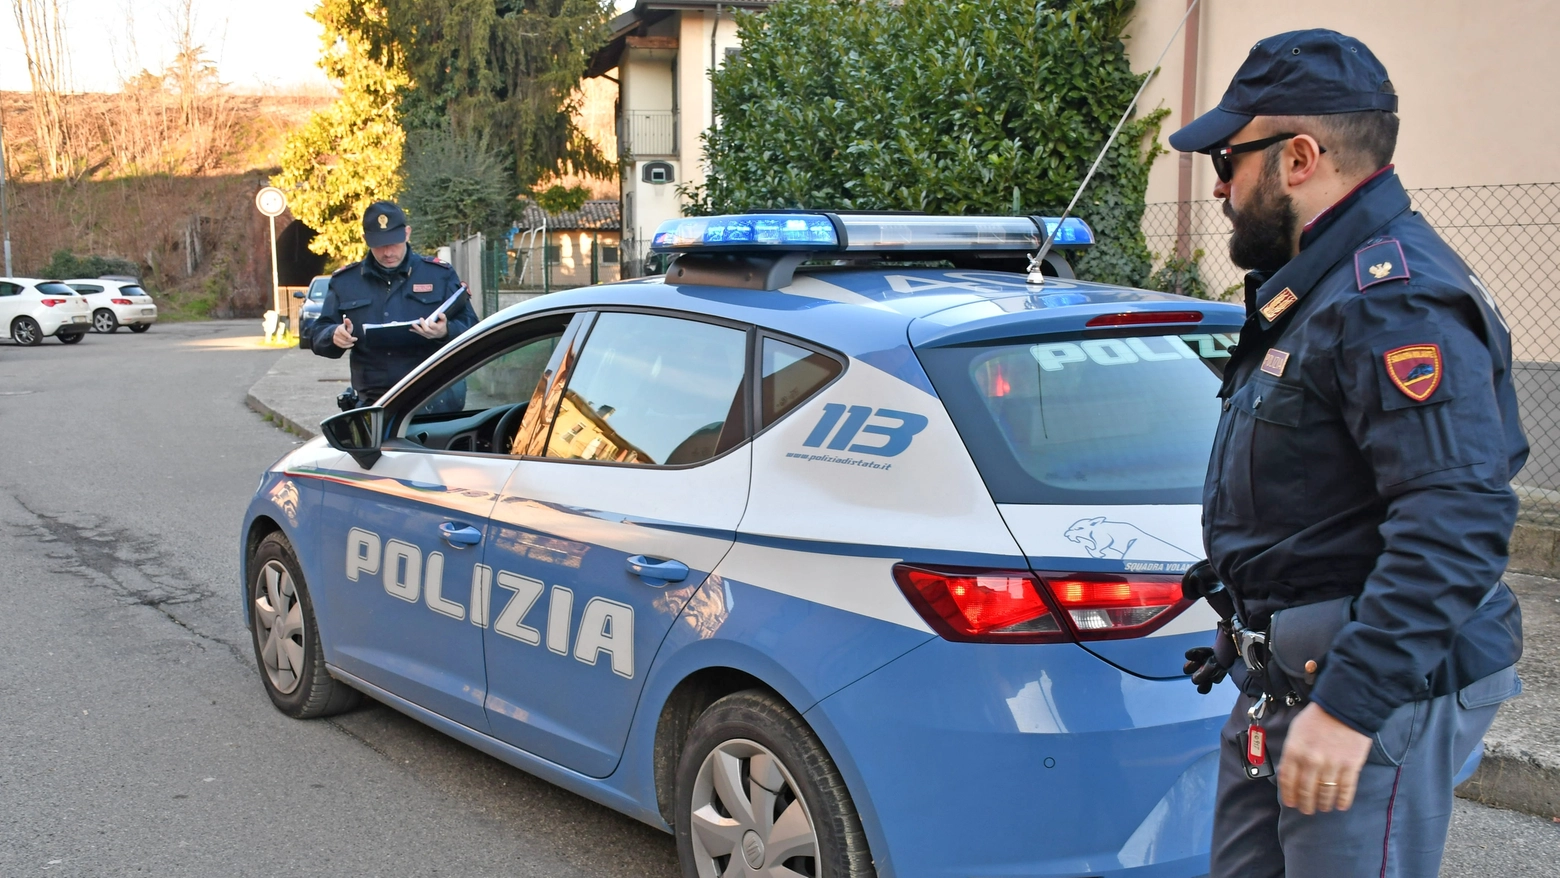 Intervento dei soccorsi sanitari e delle forze dell'ordine in viale Cesare Battisti, zona già nota per rapine e spaccio